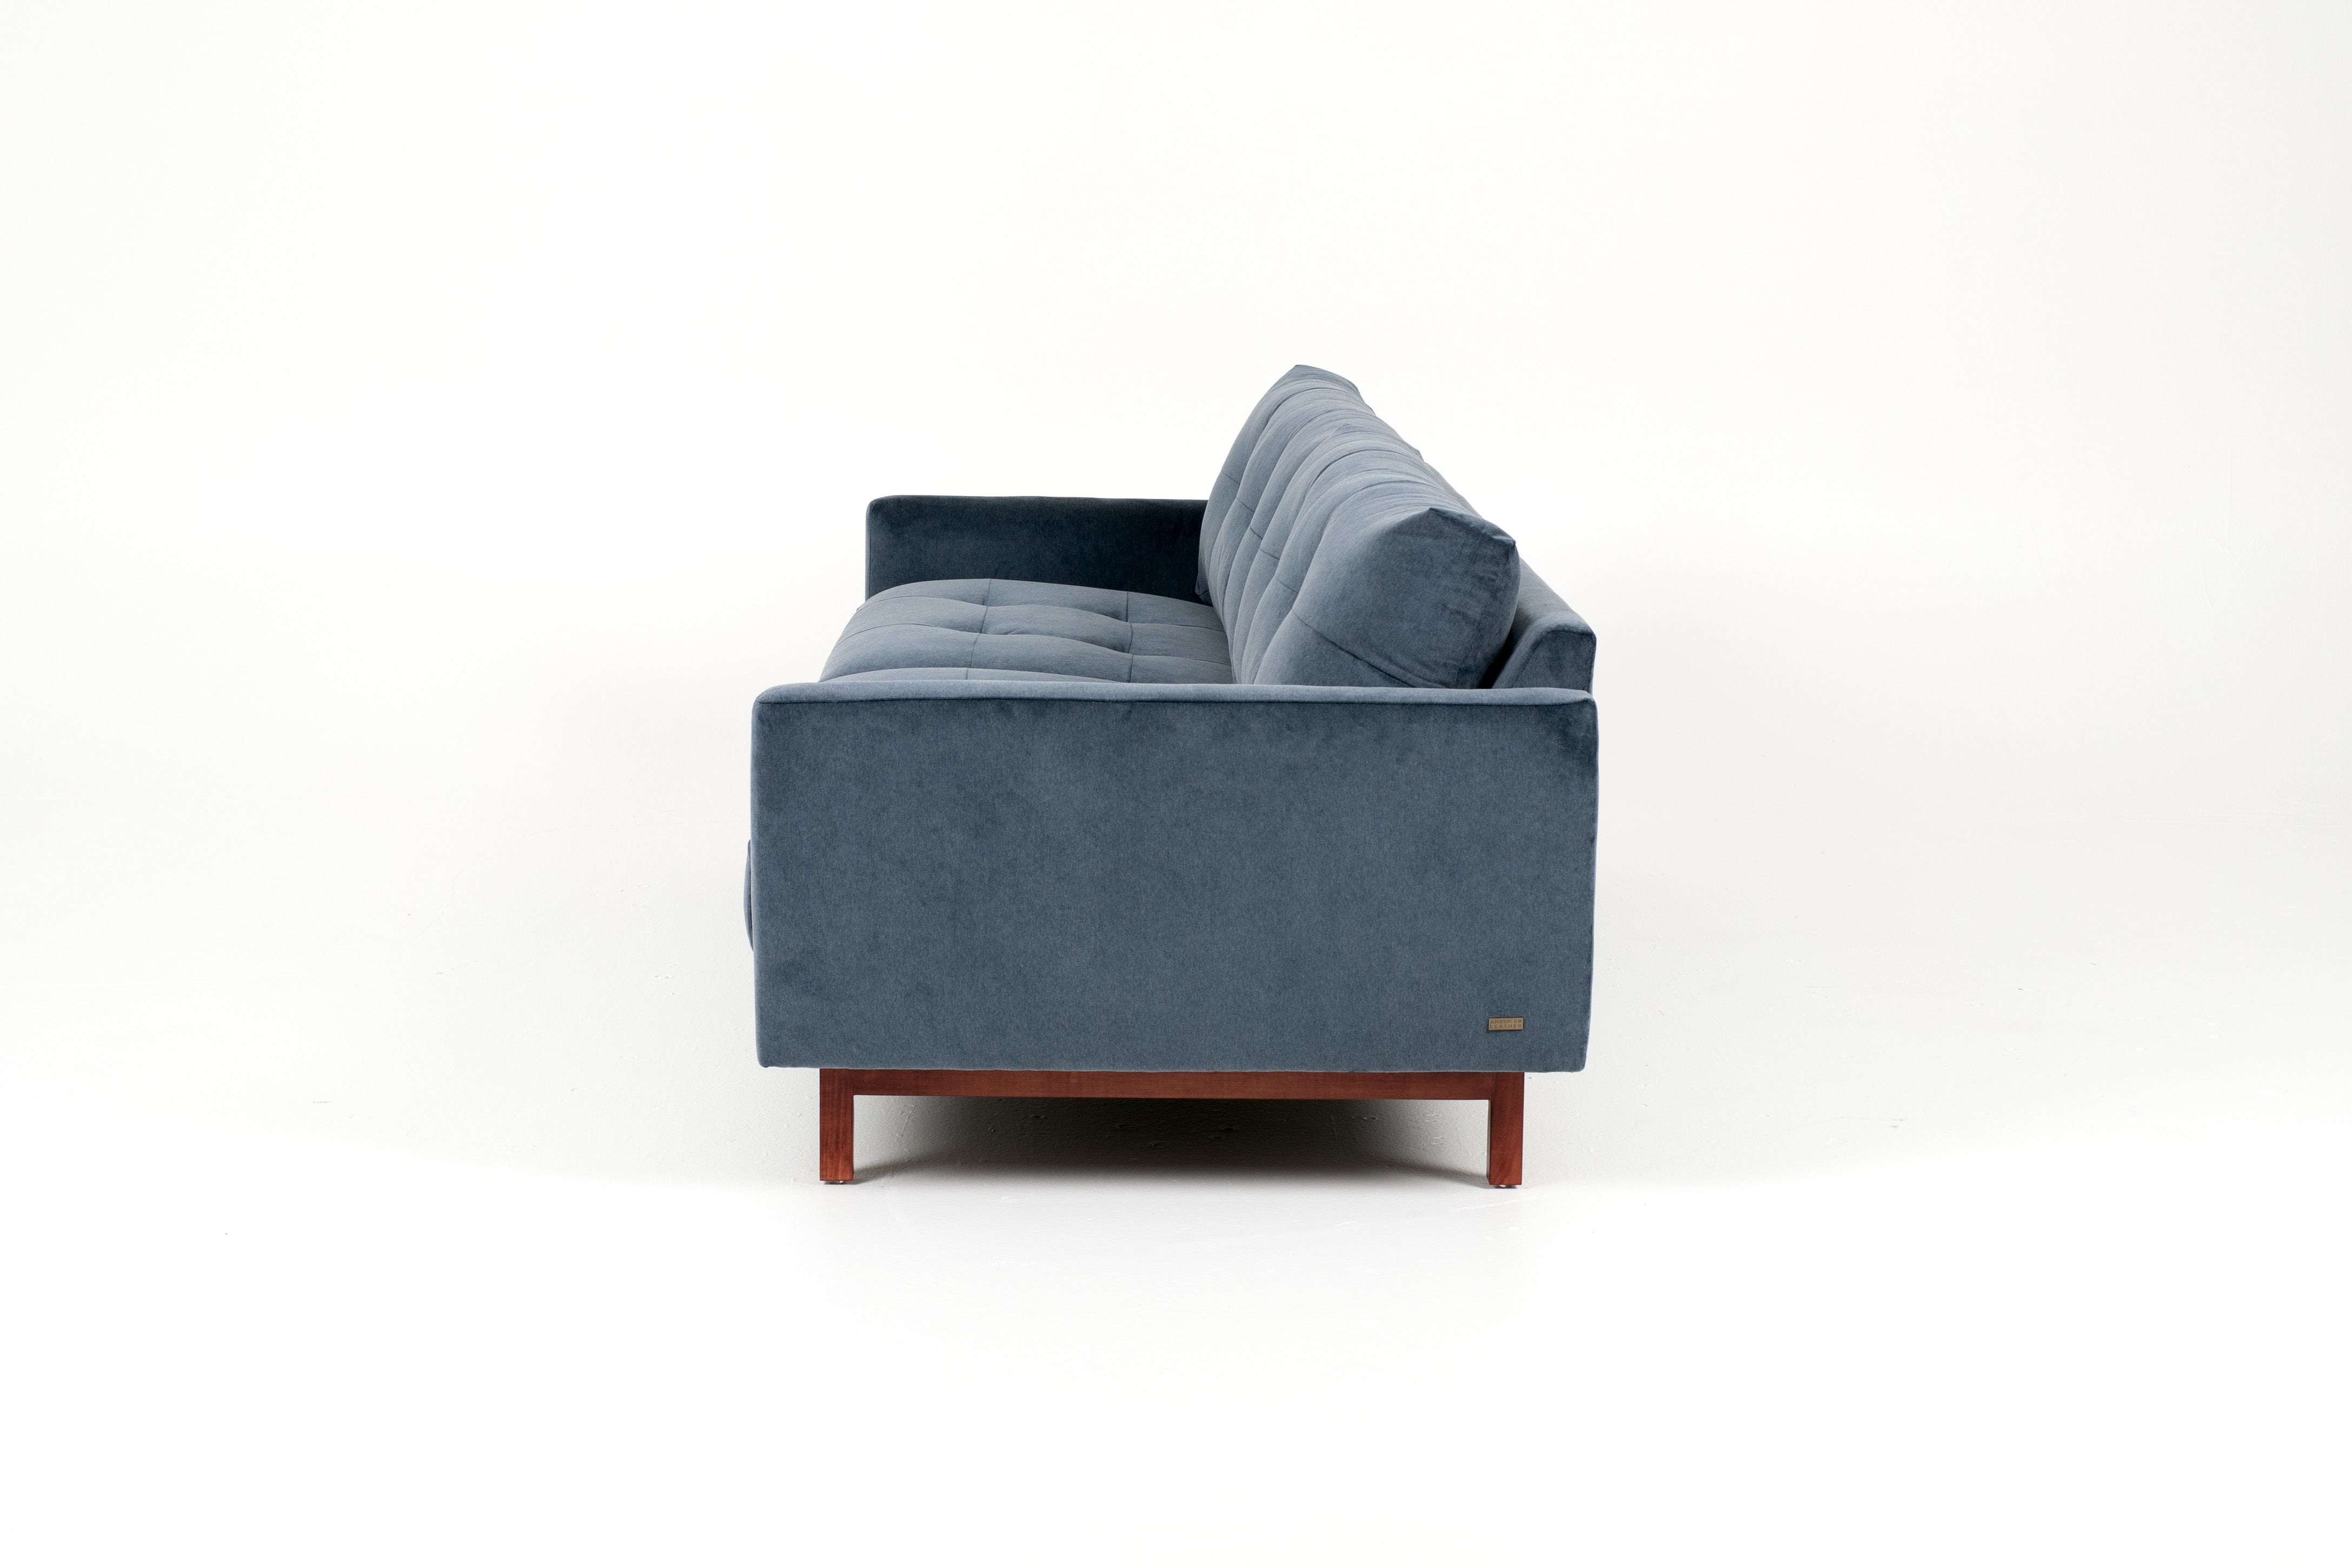 Carmet Sofa